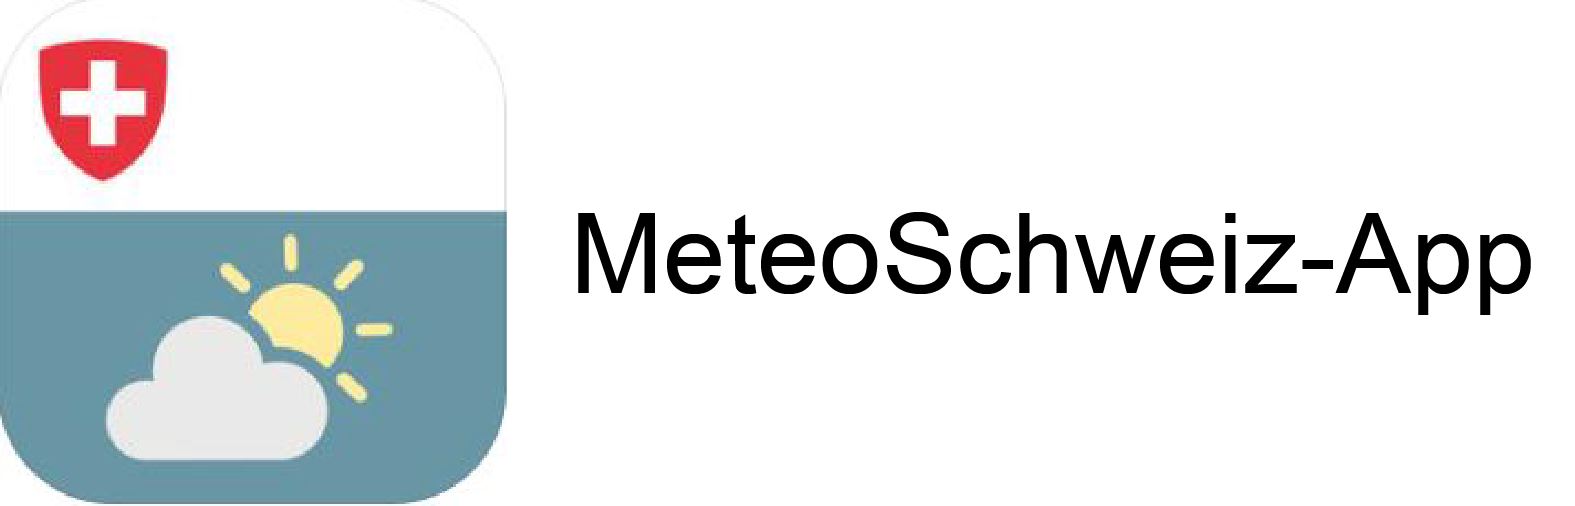 MeteoSchweiz-App mit Text